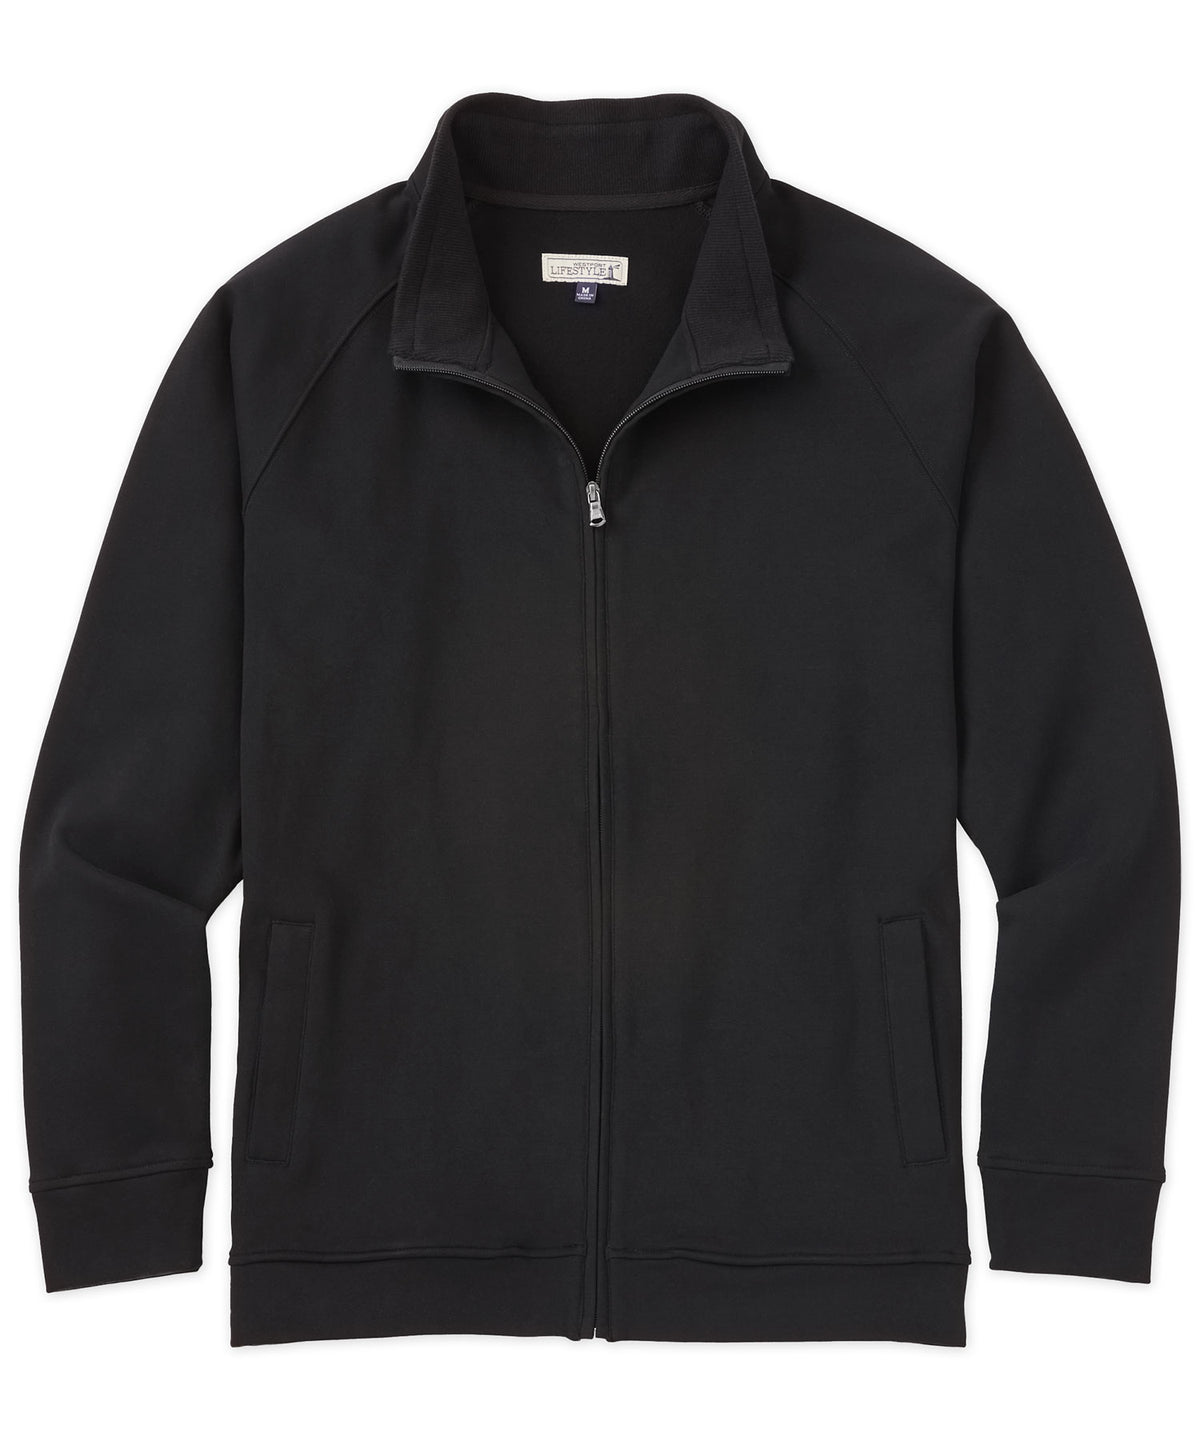 Westport Lifestyle Luxe Fleece Full-Zip Jacket, Big & Tall